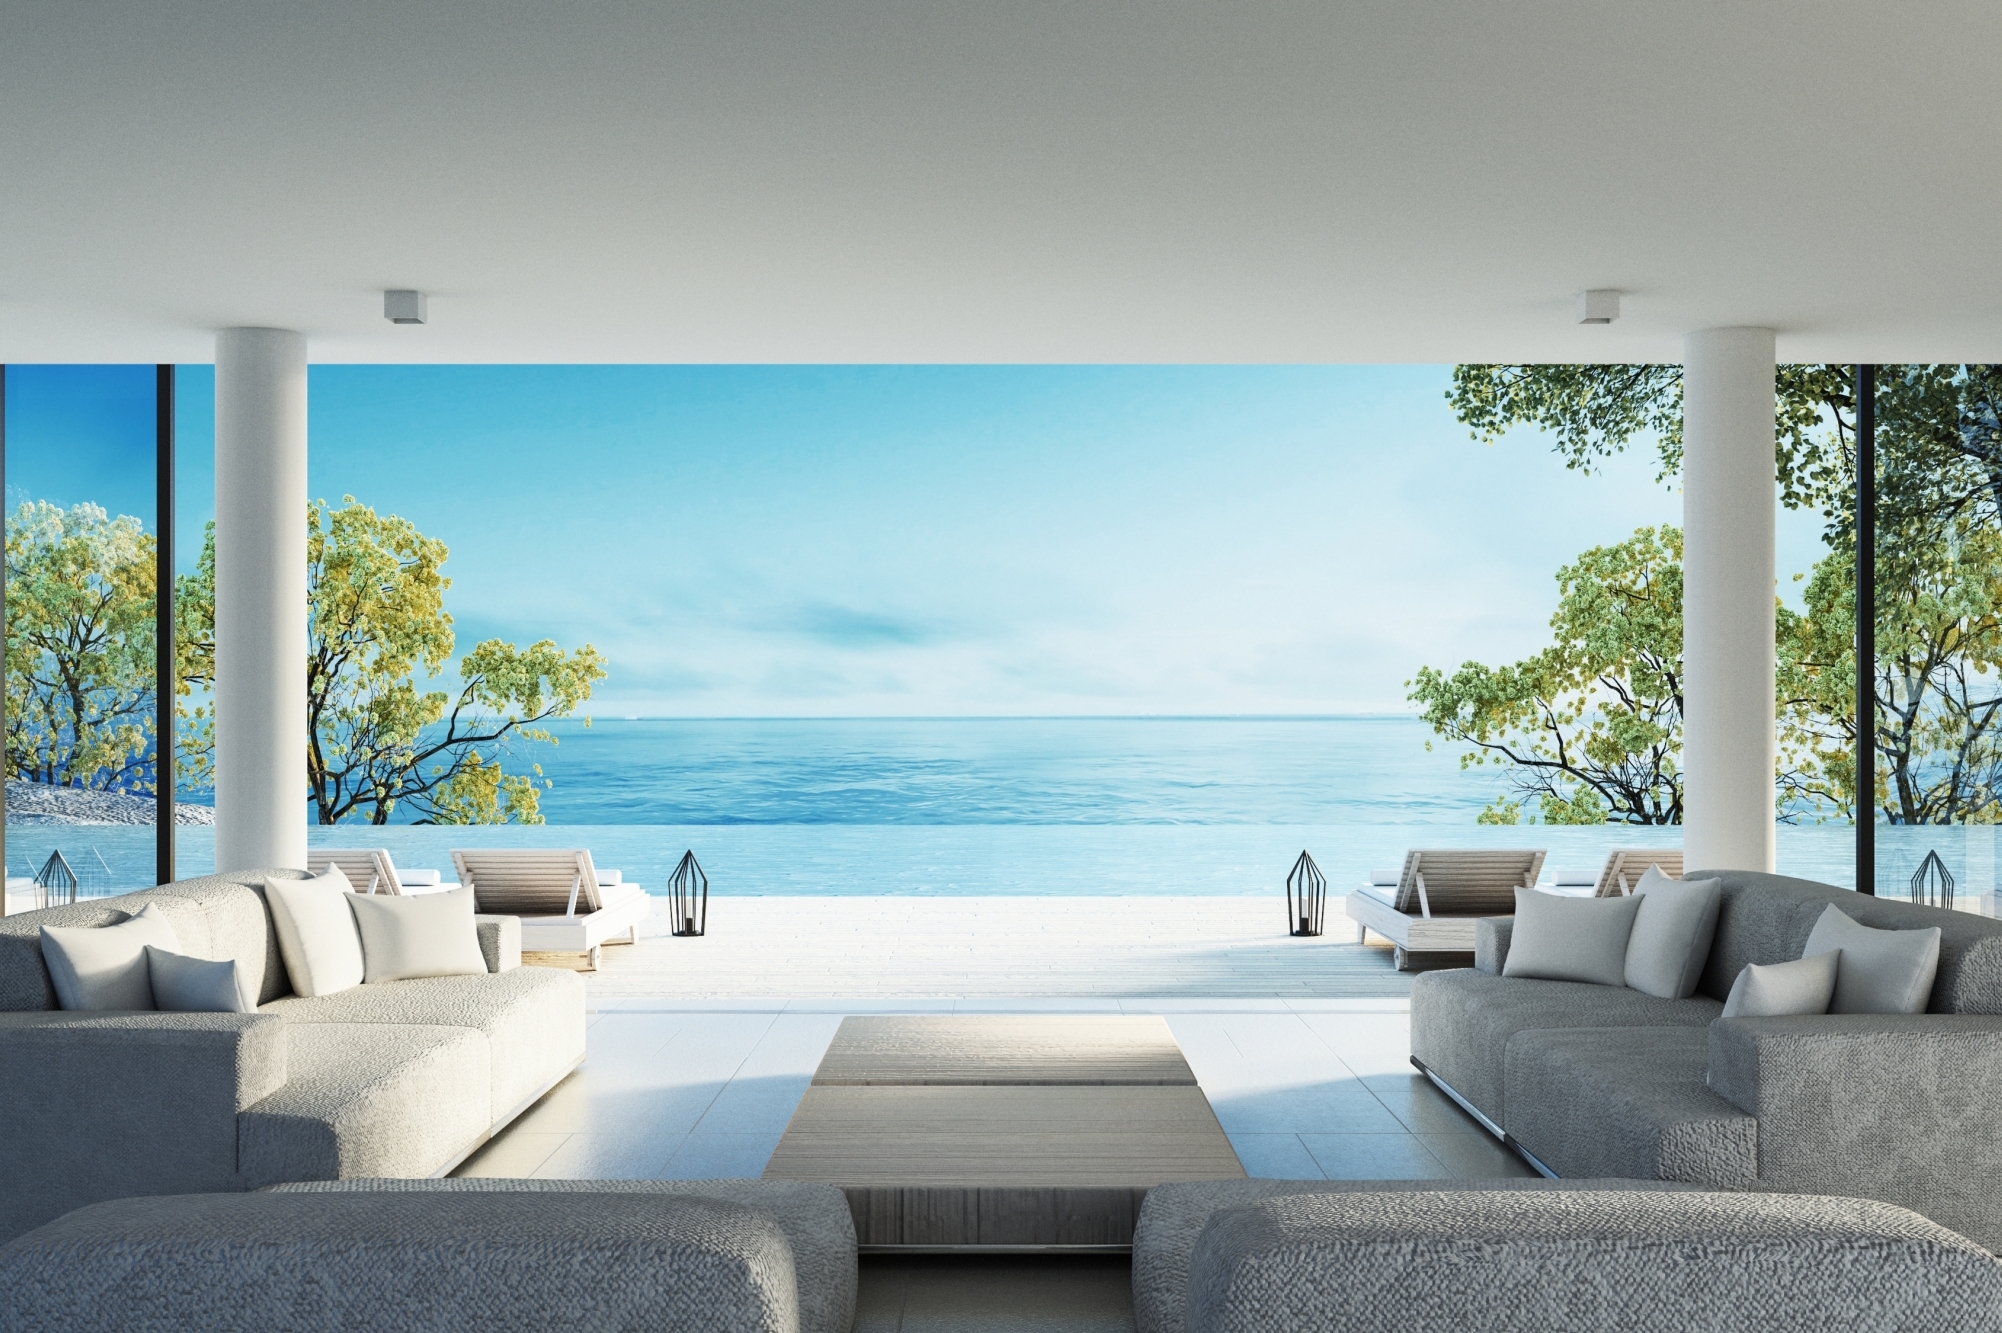 Luxury homes with ocean views